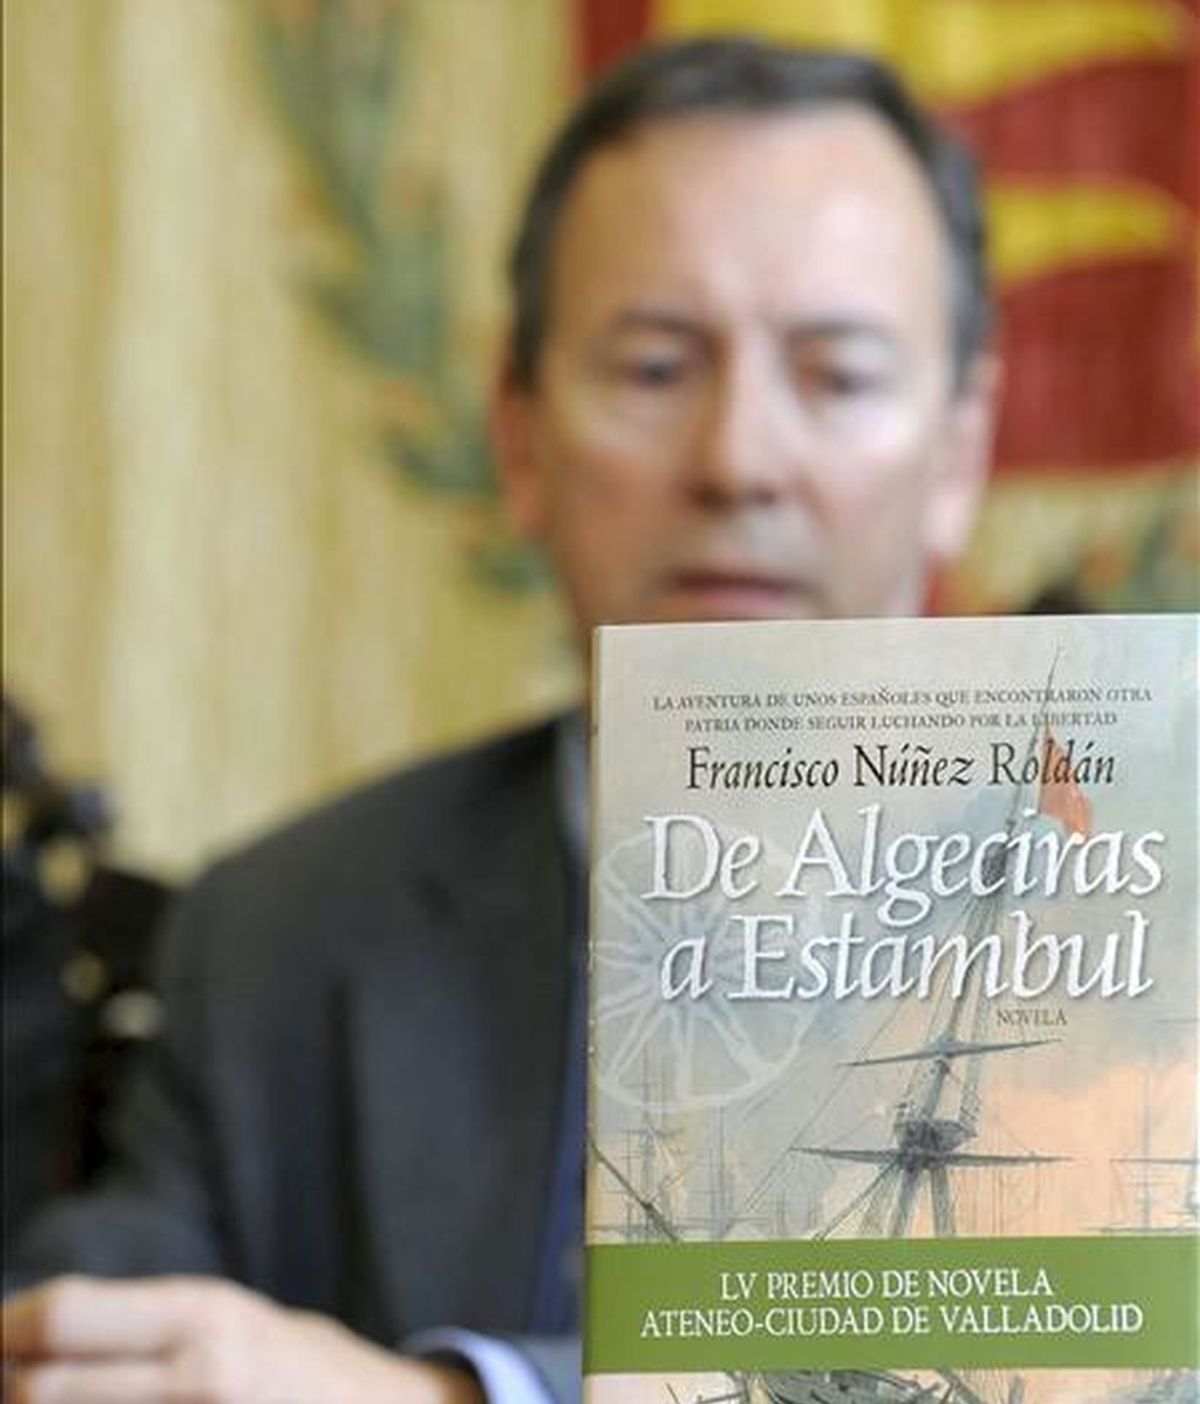 El escritor Francisco Núñez Roldán, durante la presentación del relato "De Algeciras a Estambul", ganador del 55 Premio de Novela Ateneo-Ciudad de Valladolid, el pasado 15 de abril. EFE/Archivo